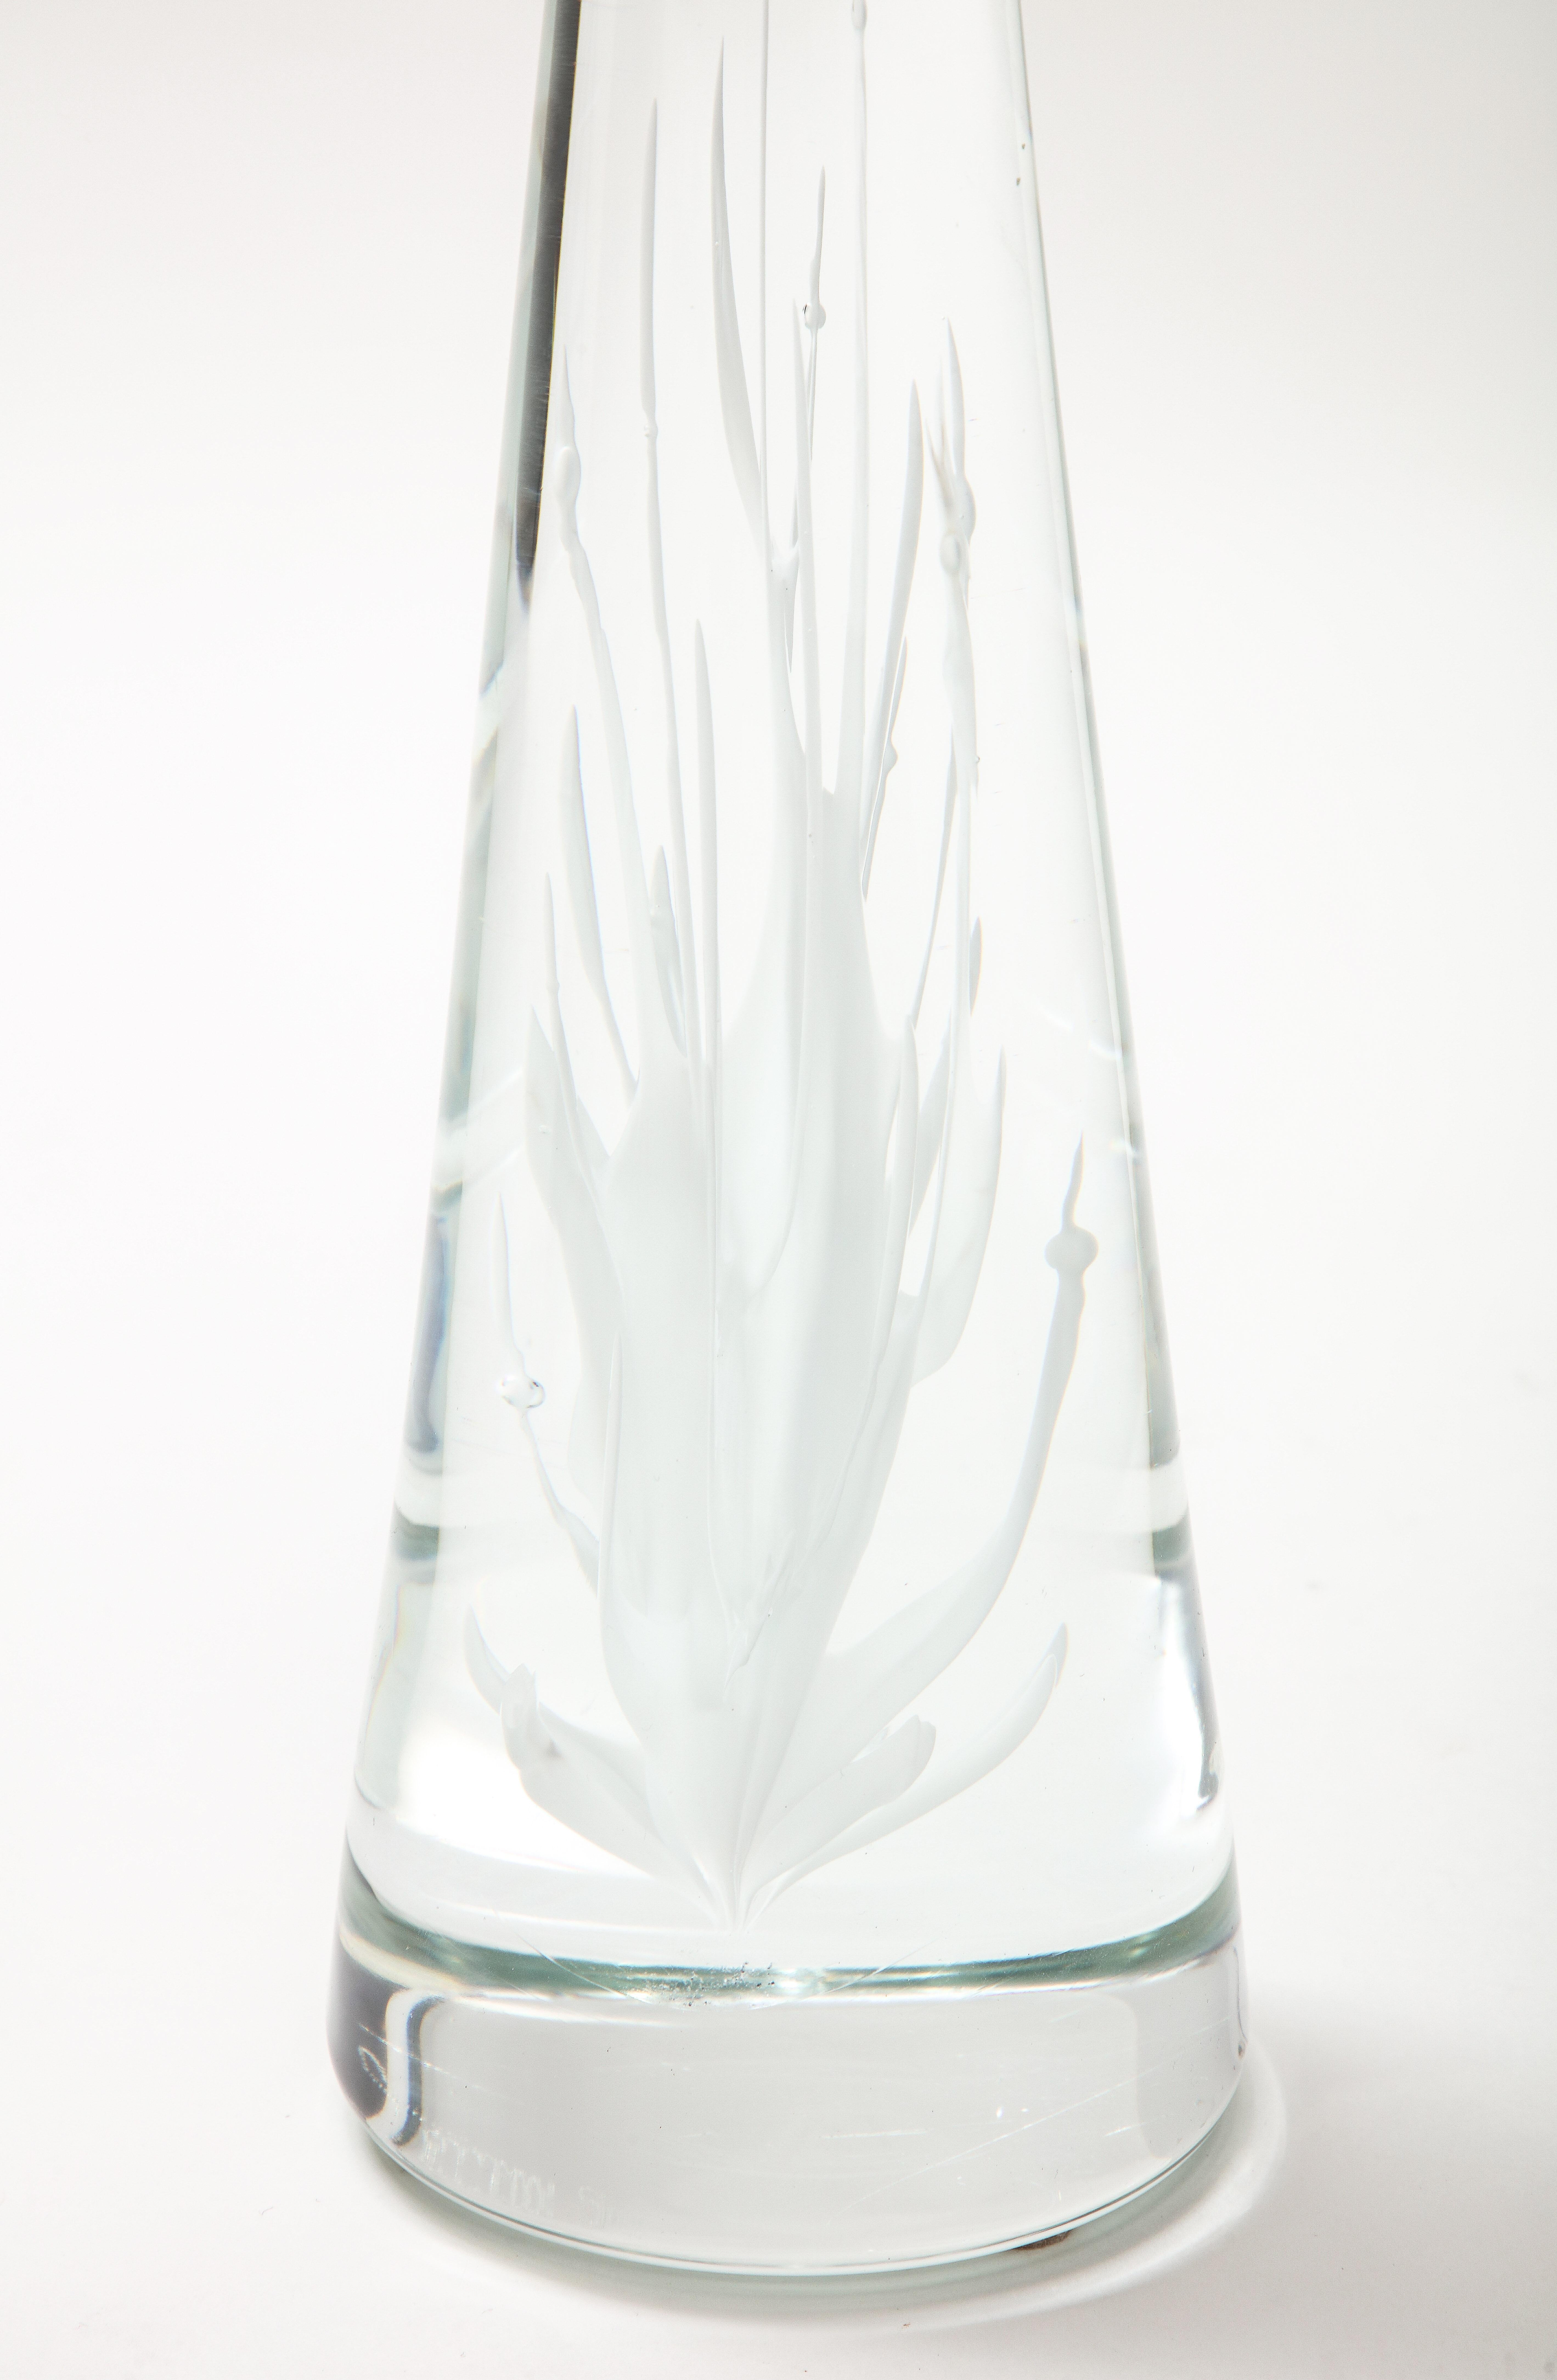 Italian Licio Zanetti Glass Murano Sculpture For Sale